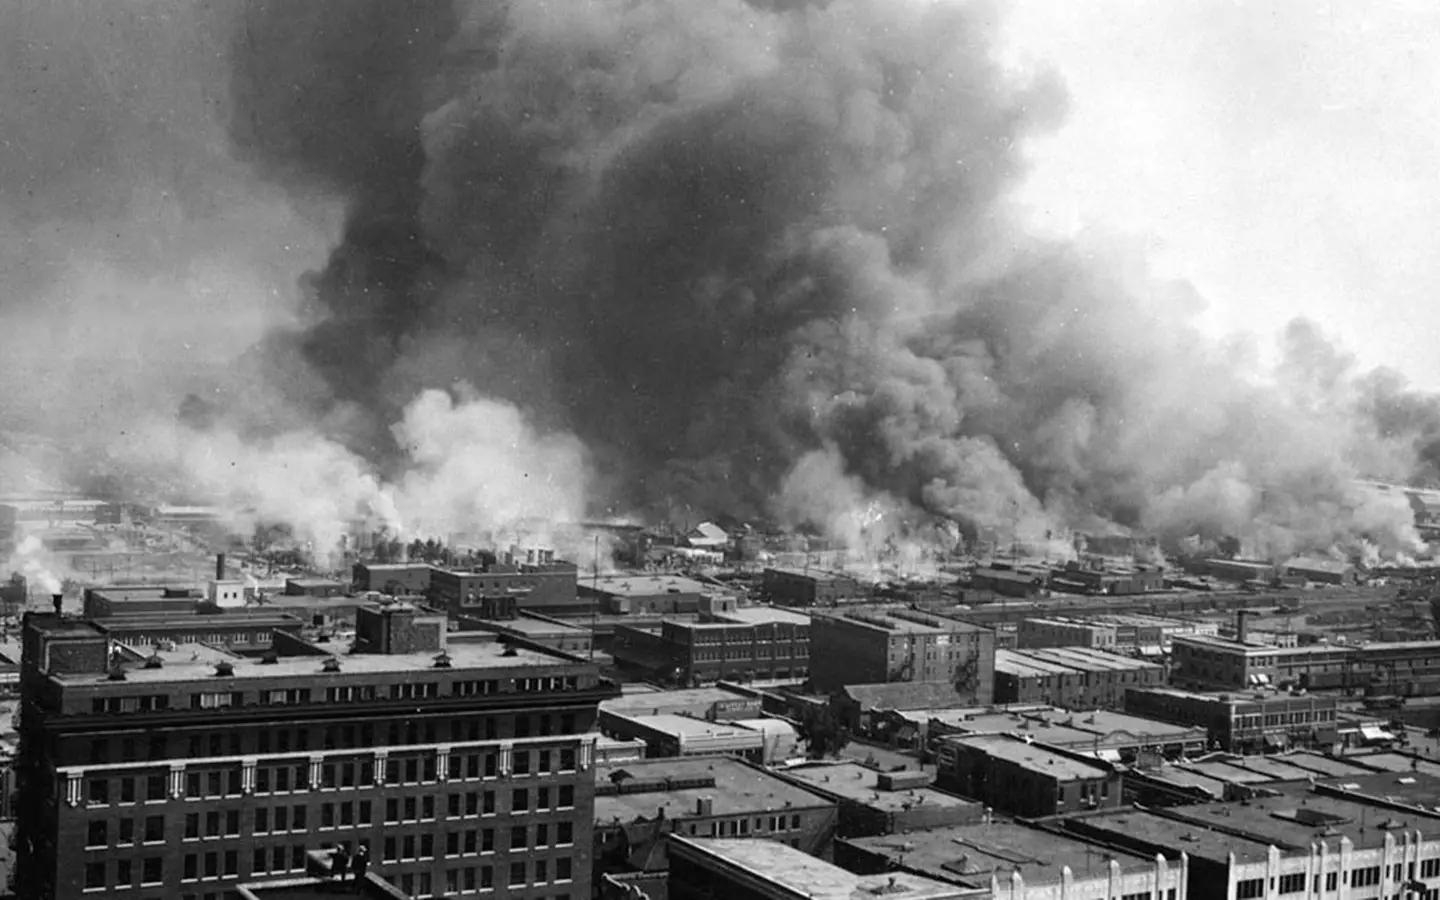 The Tulsa Race Massacre took place in 1921.